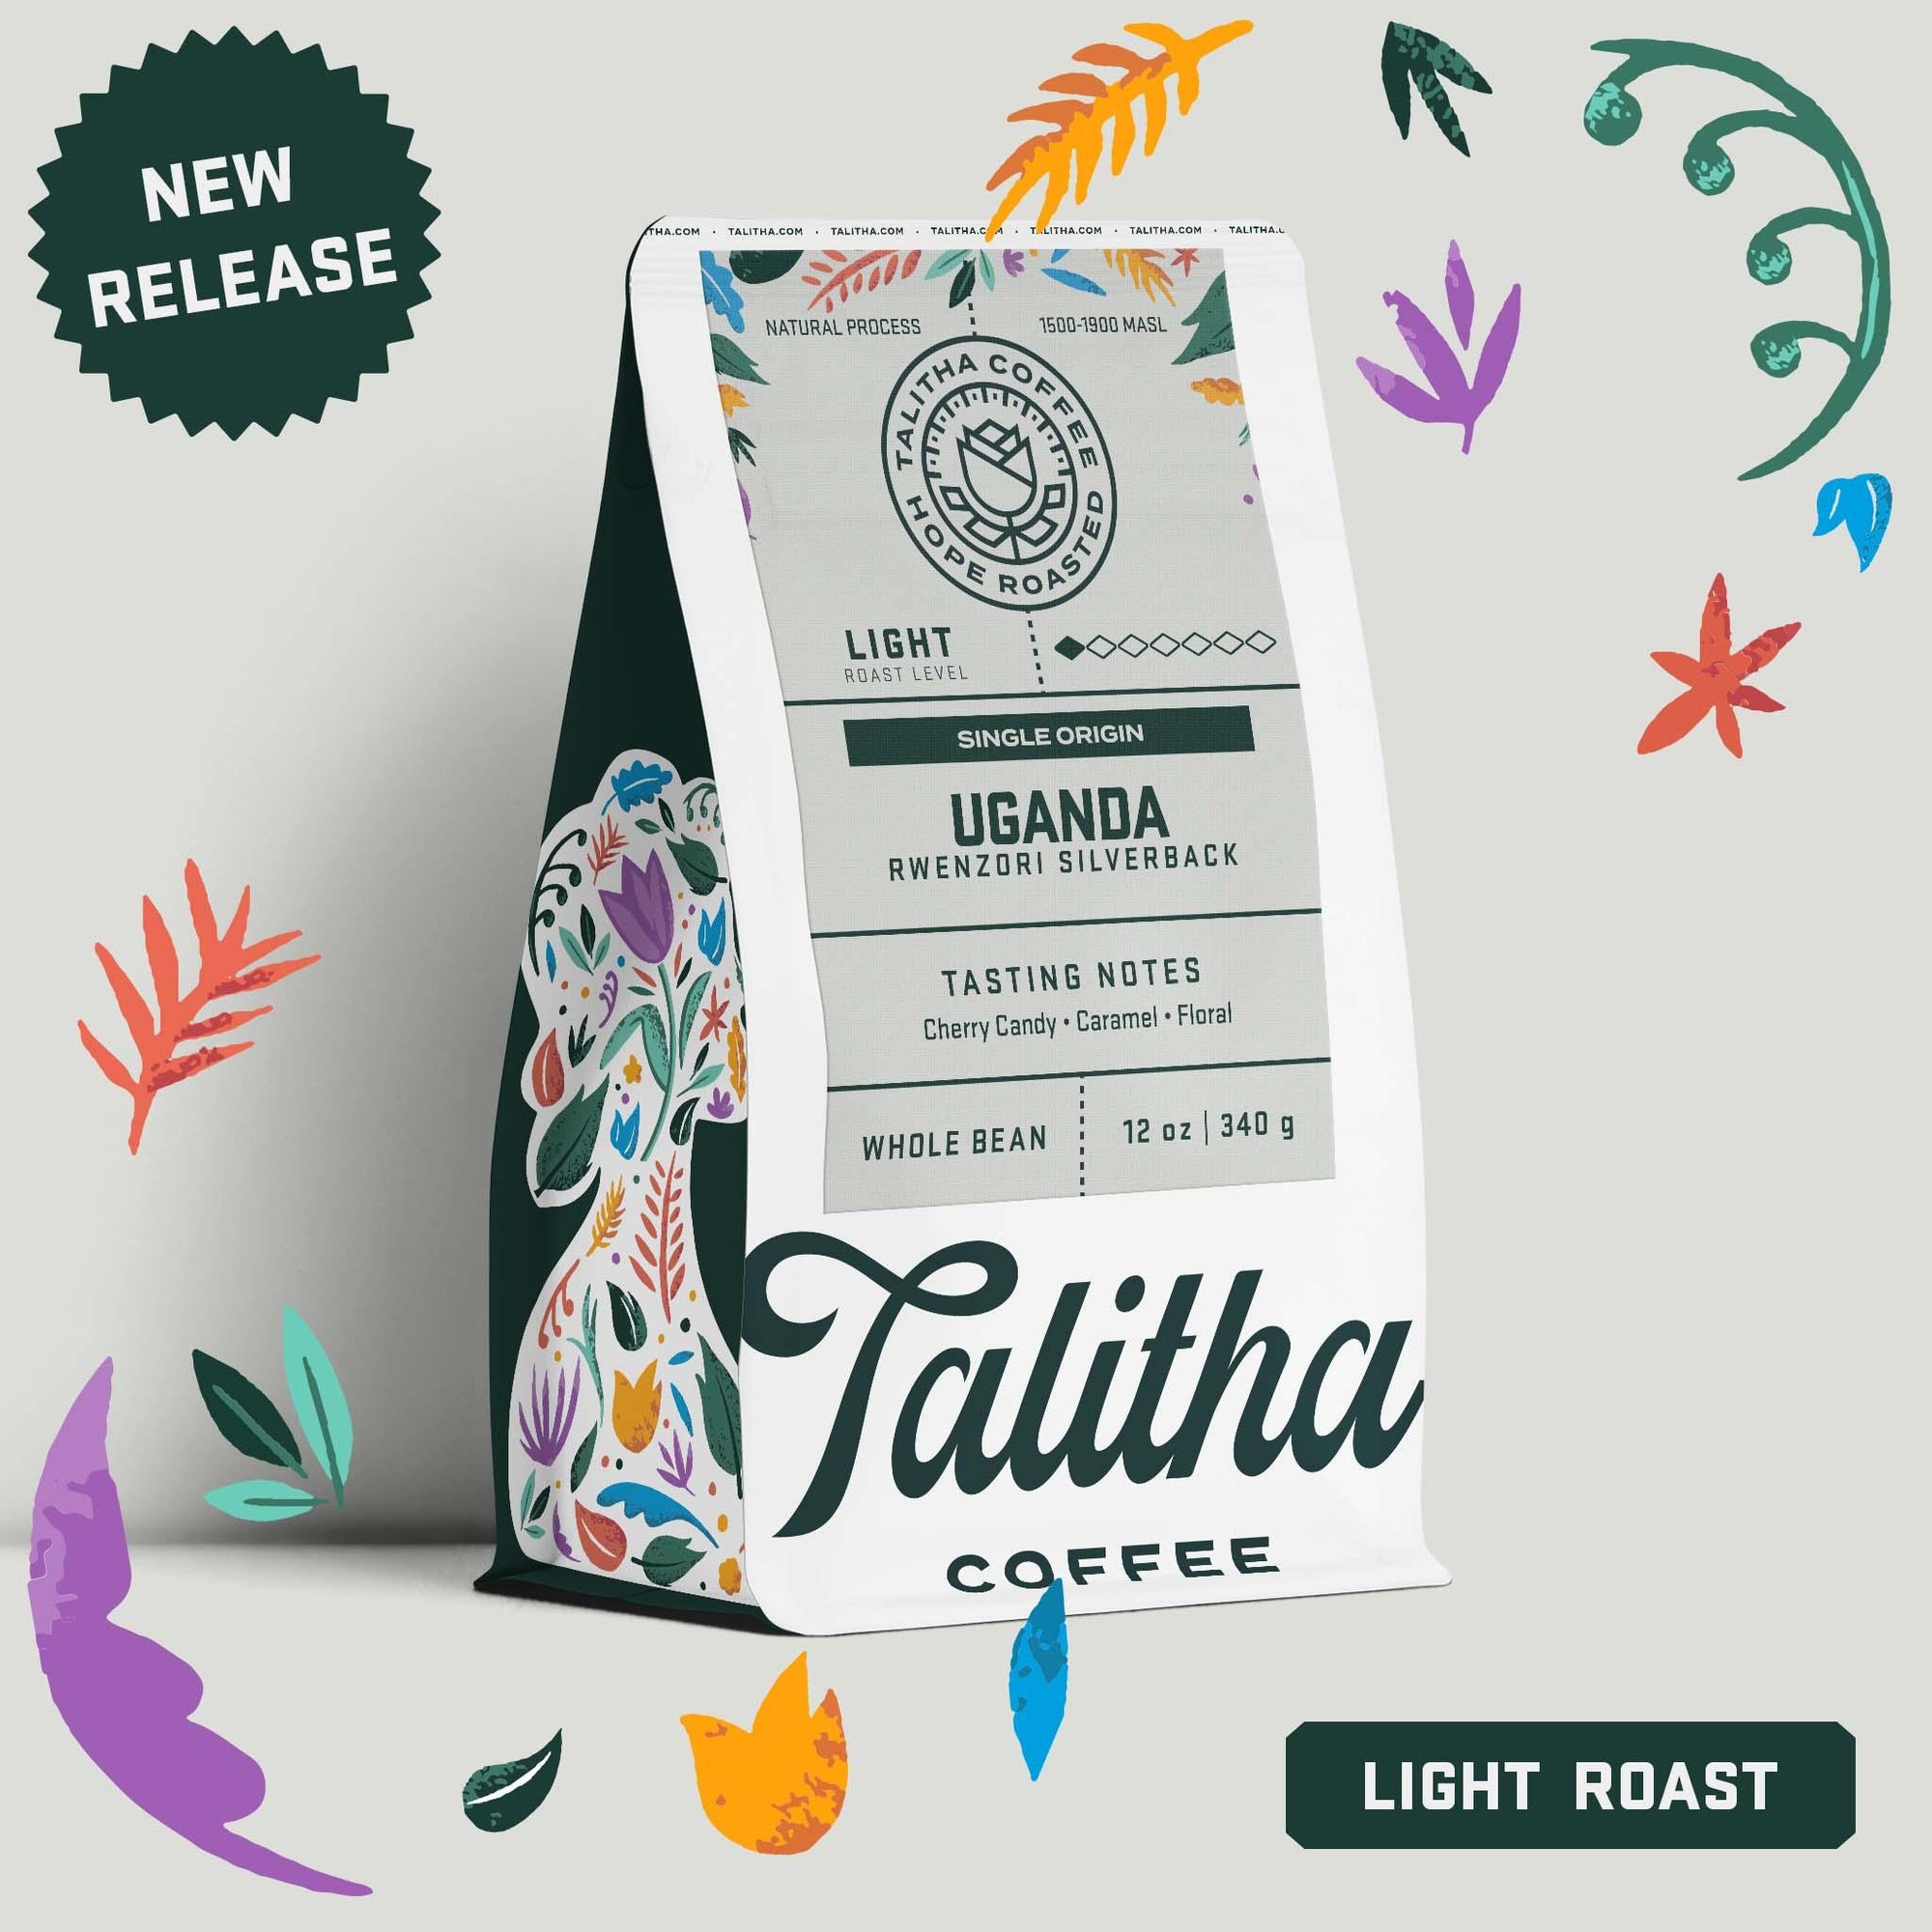 Rwenzori - Uganda - Talitha Coffee